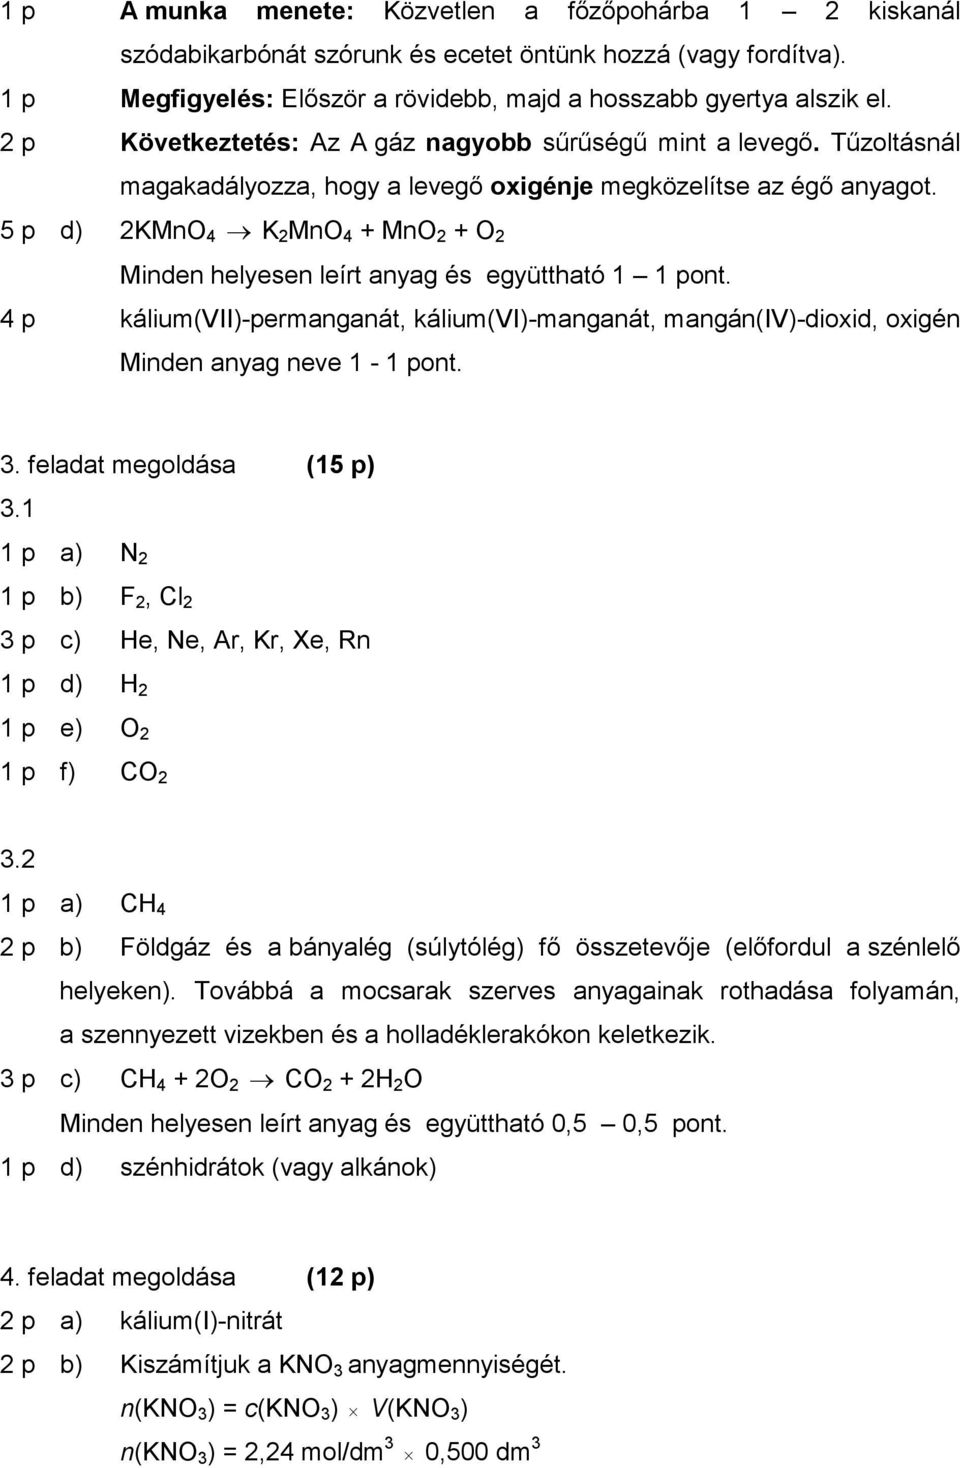 5 p d) 2KMnO 4 K 2 MnO 4 + MnO 2 + O 2 Minden helyesen leírt anyag és együttható 1 1 pont. 4 p kálium(vii)-permanganát, kálium(vi)-manganát, mangán(iv)-dioxid, oxigén Minden anyag neve 1-1 pont. 3.